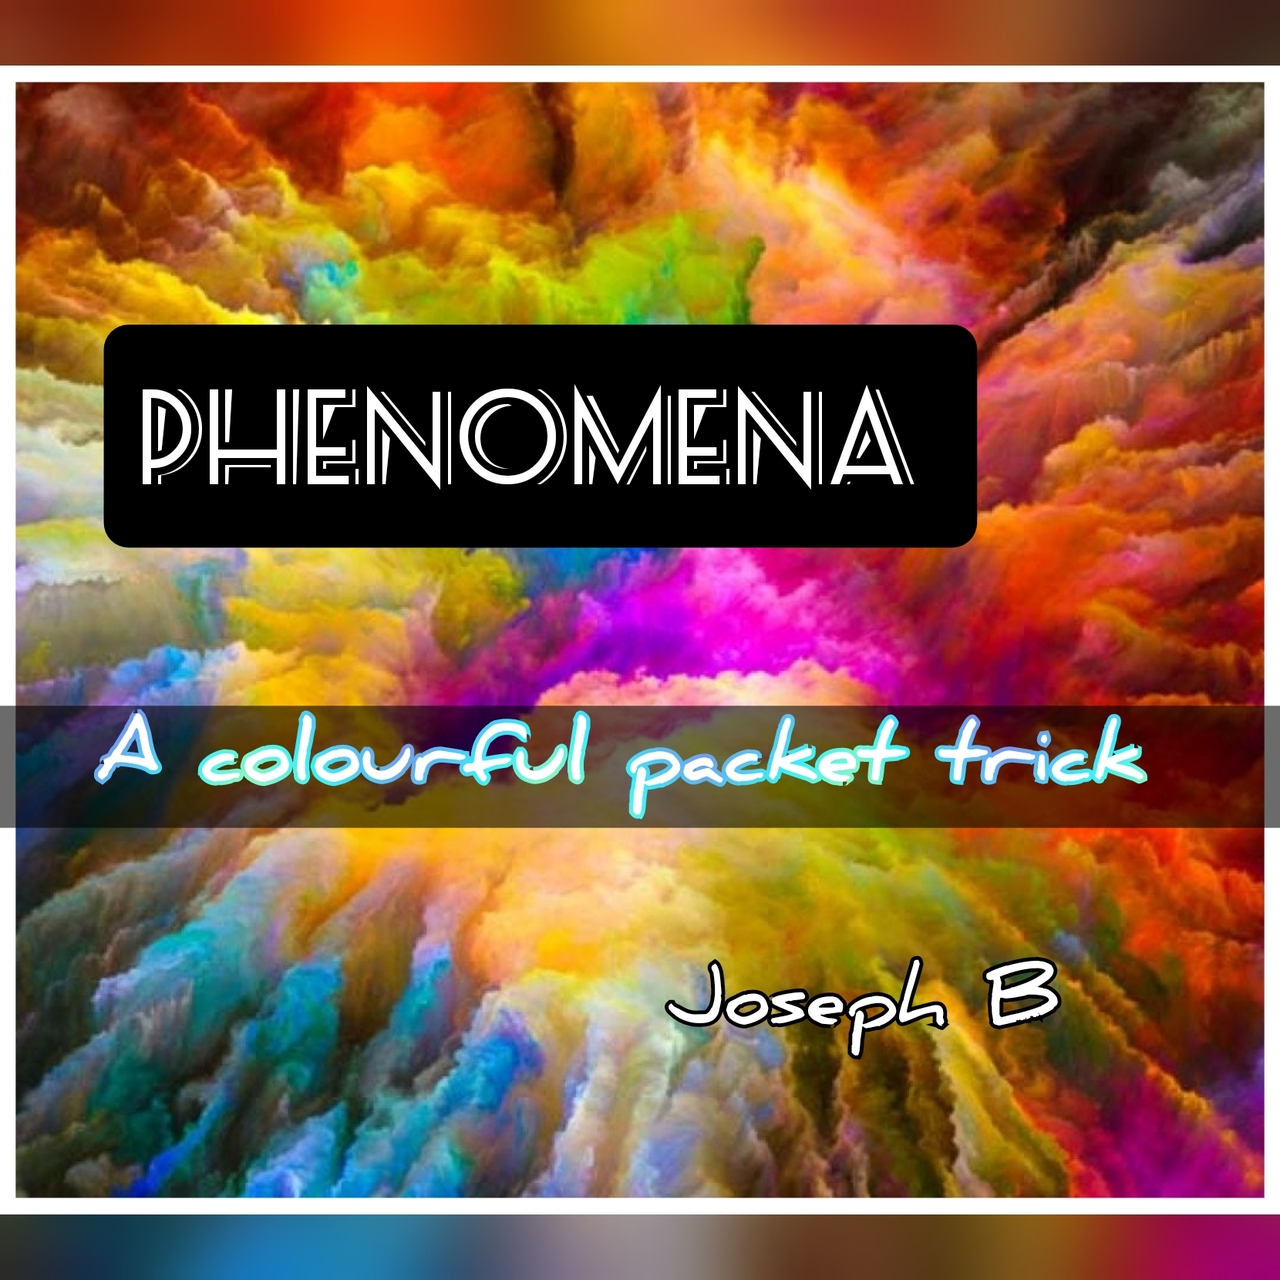 Phenomena by Joseph B. (Full Download)